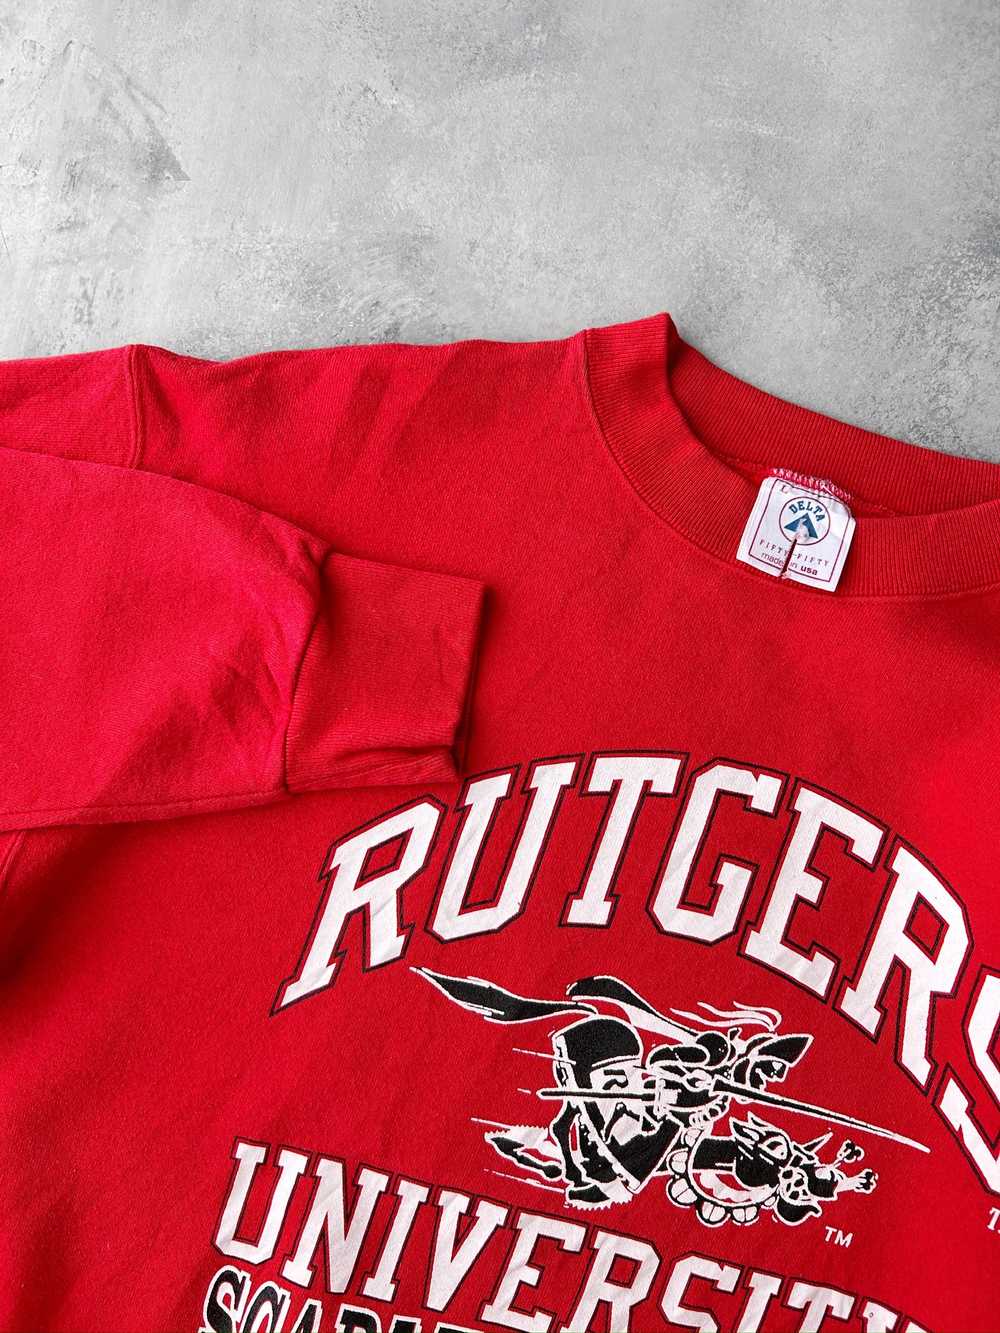 Rutgers University Sweatshirt 90's - Large - image 2